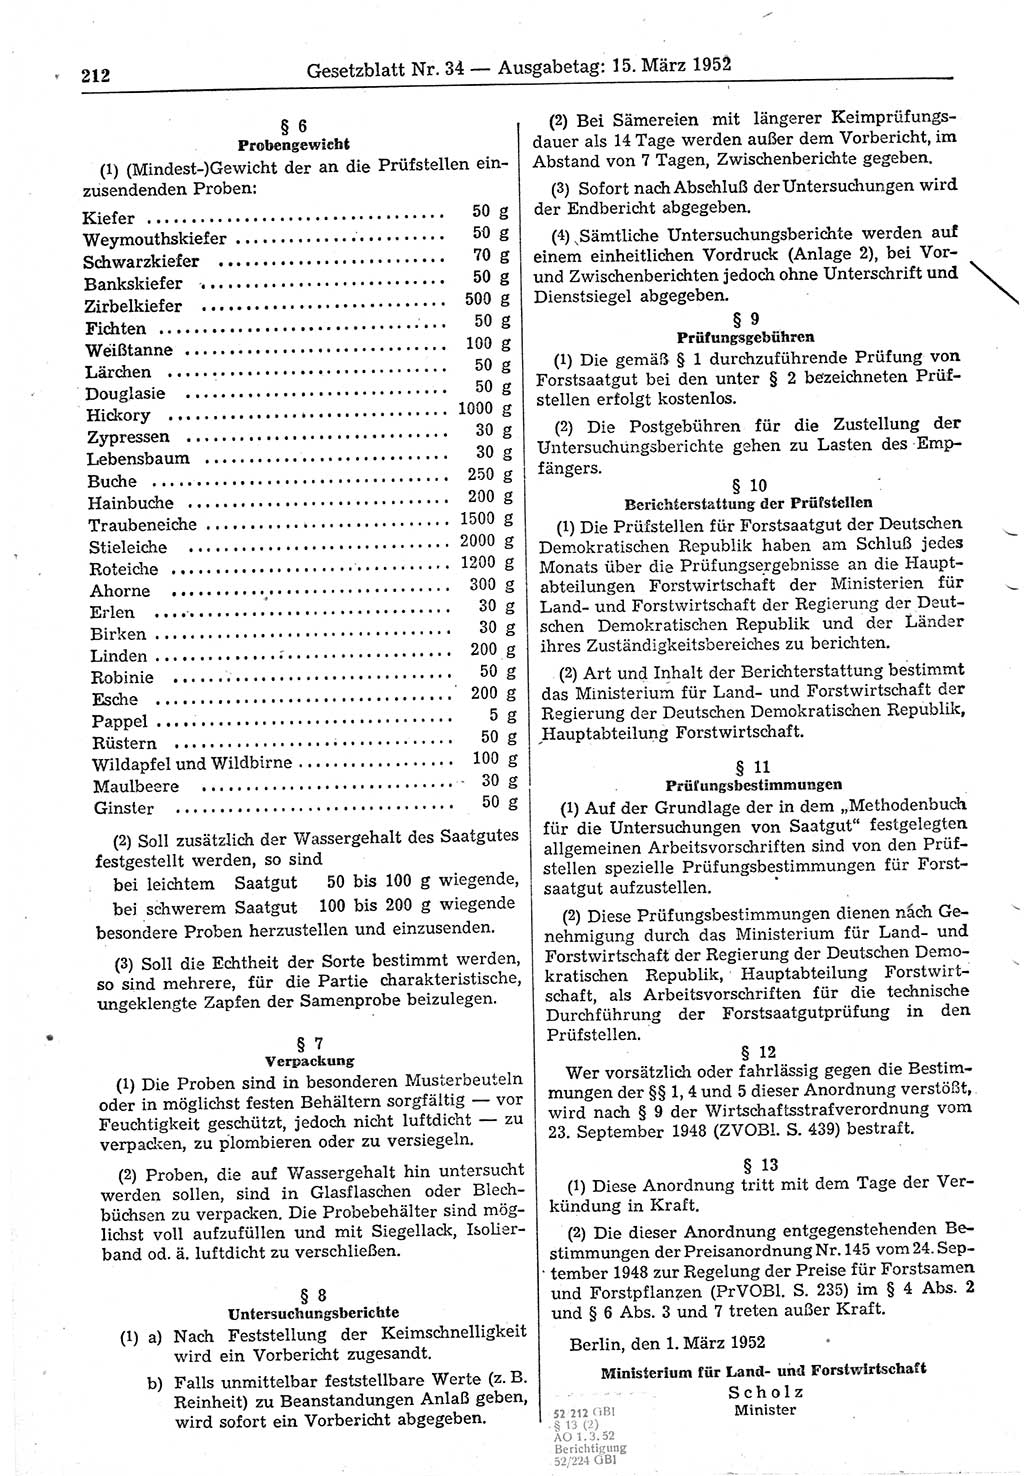 Gesetzblatt (GBl.) der Deutschen Demokratischen Republik (DDR) 1952, Seite 212 (GBl. DDR 1952, S. 212)